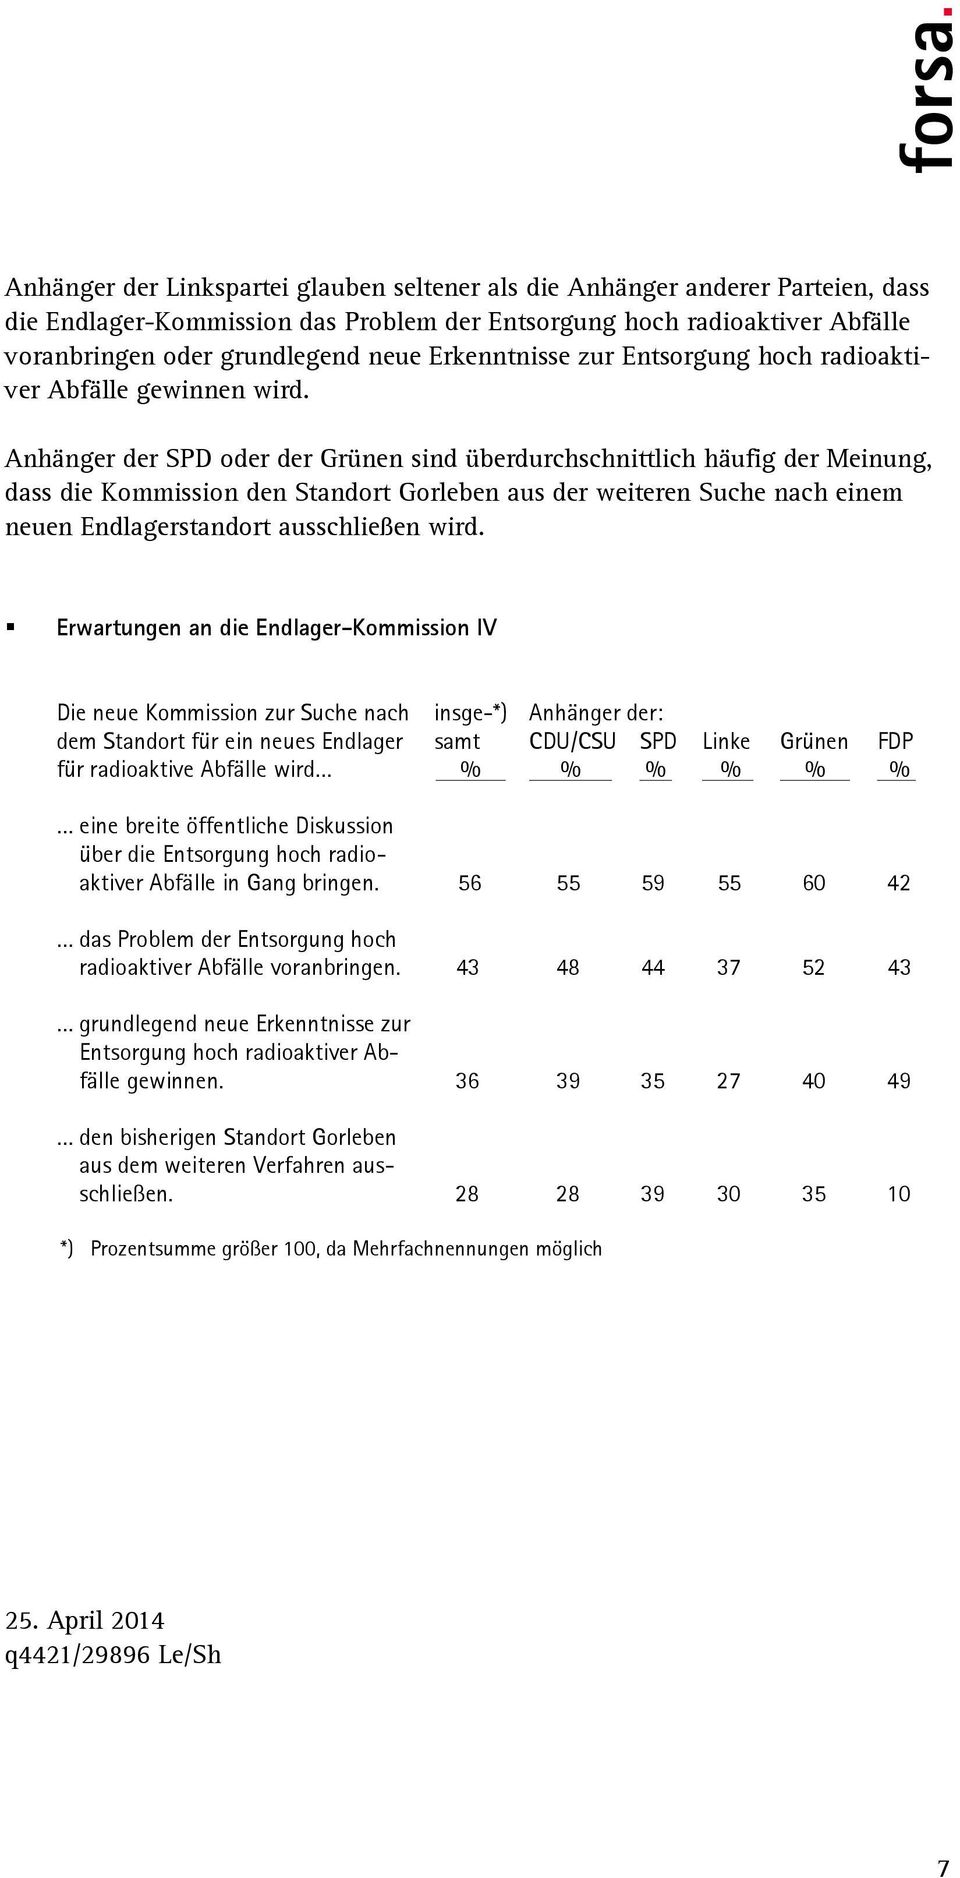 Anhänger der SPD oder der Grünen sind überdurchschnittlich häufig der Meinung, dass die Kommission den Standort Gorleben aus der weiteren Suche nach einem neuen Endlagerstandort ausschließen wird.